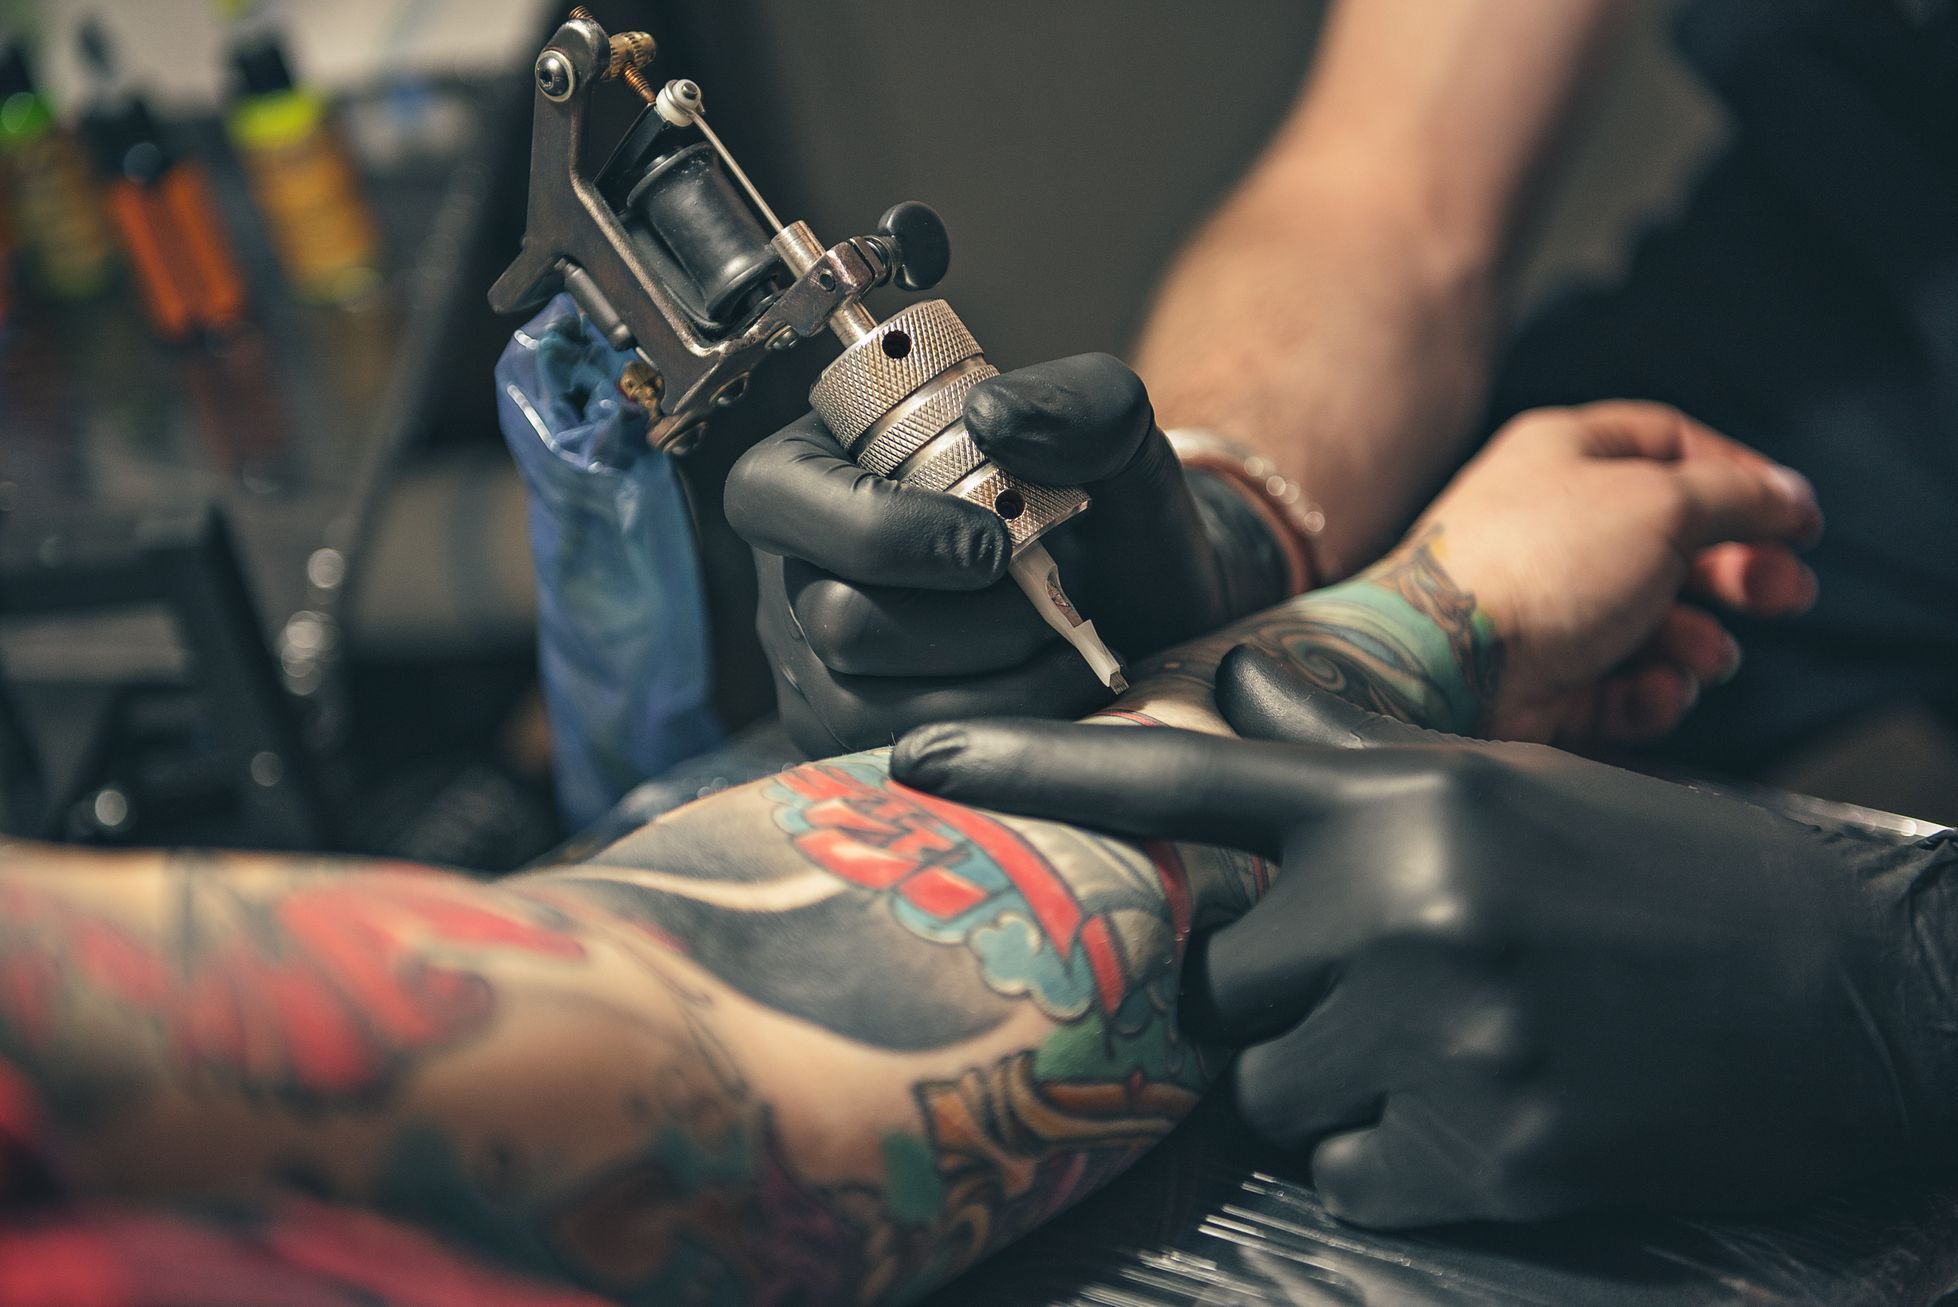 Tetování, ilustrační foto